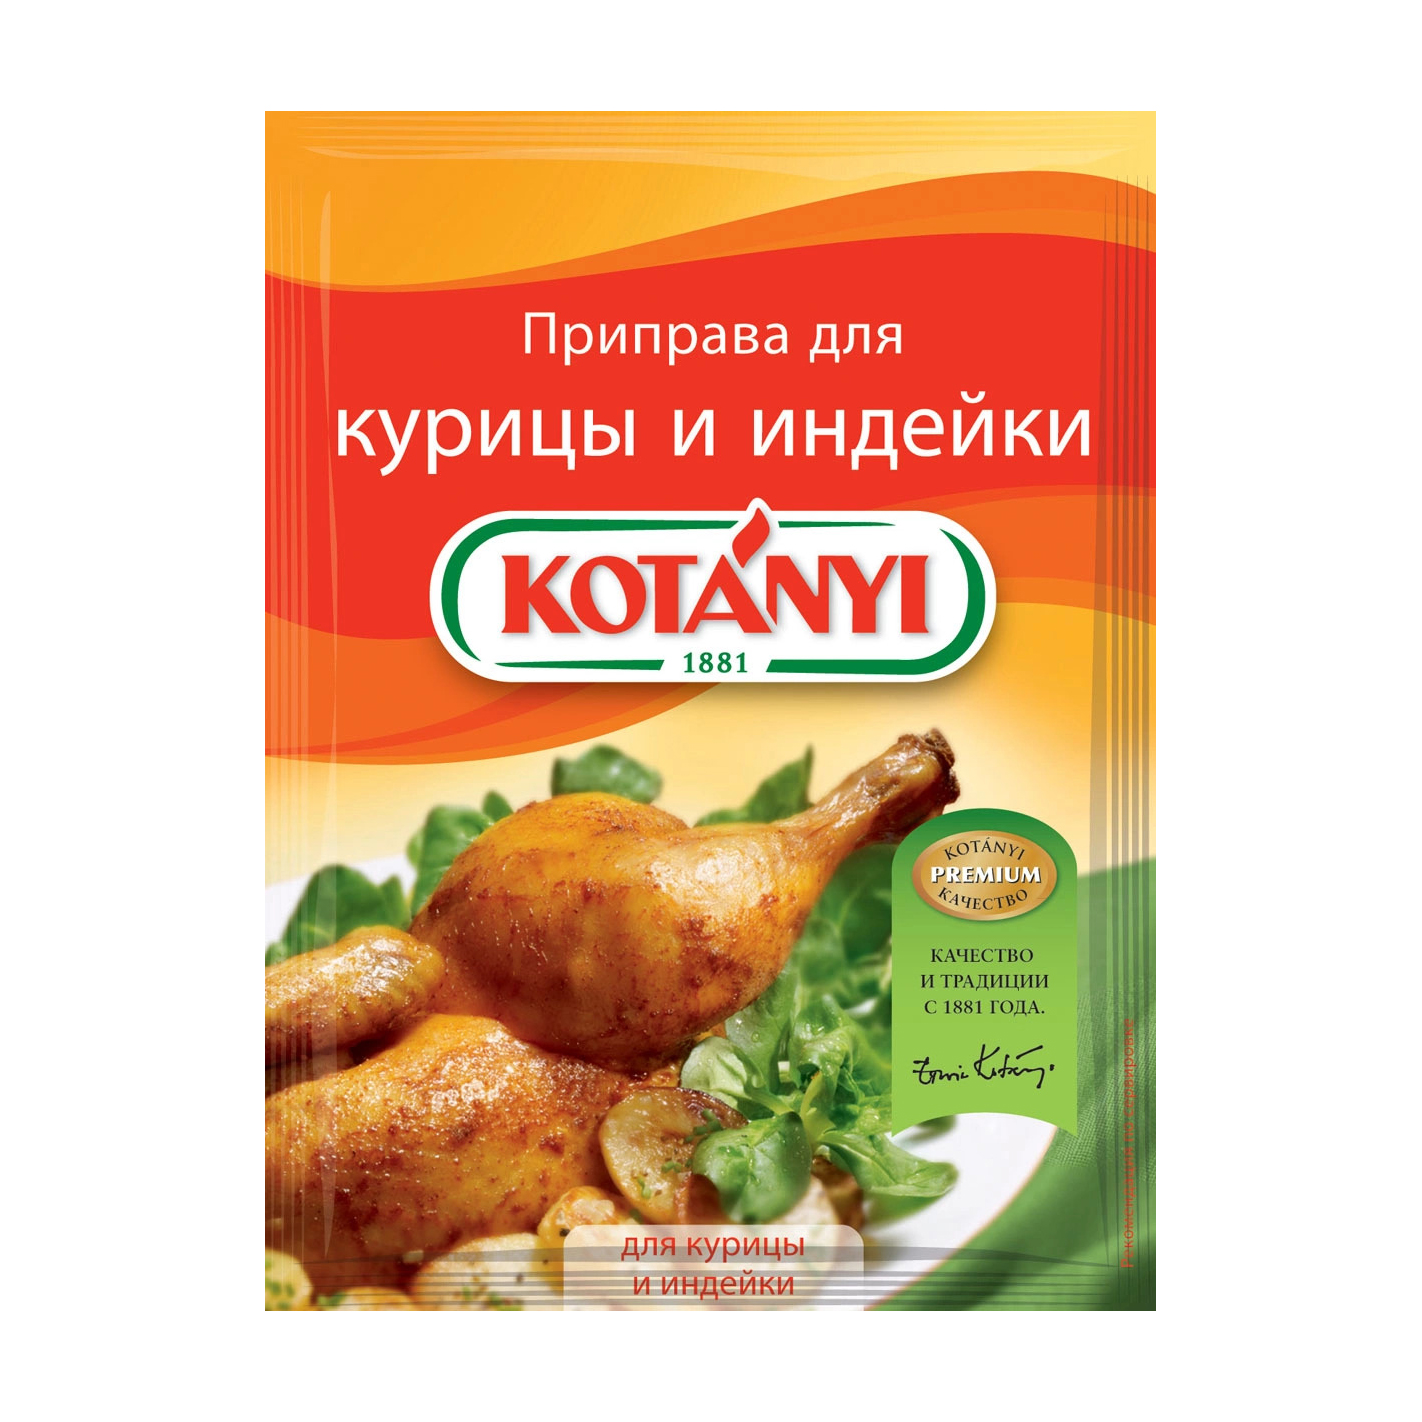 Приправа Kotanyi для курицы и индейки 30 г приправа maggi на второе для сочной курицы с чесноком 38 г